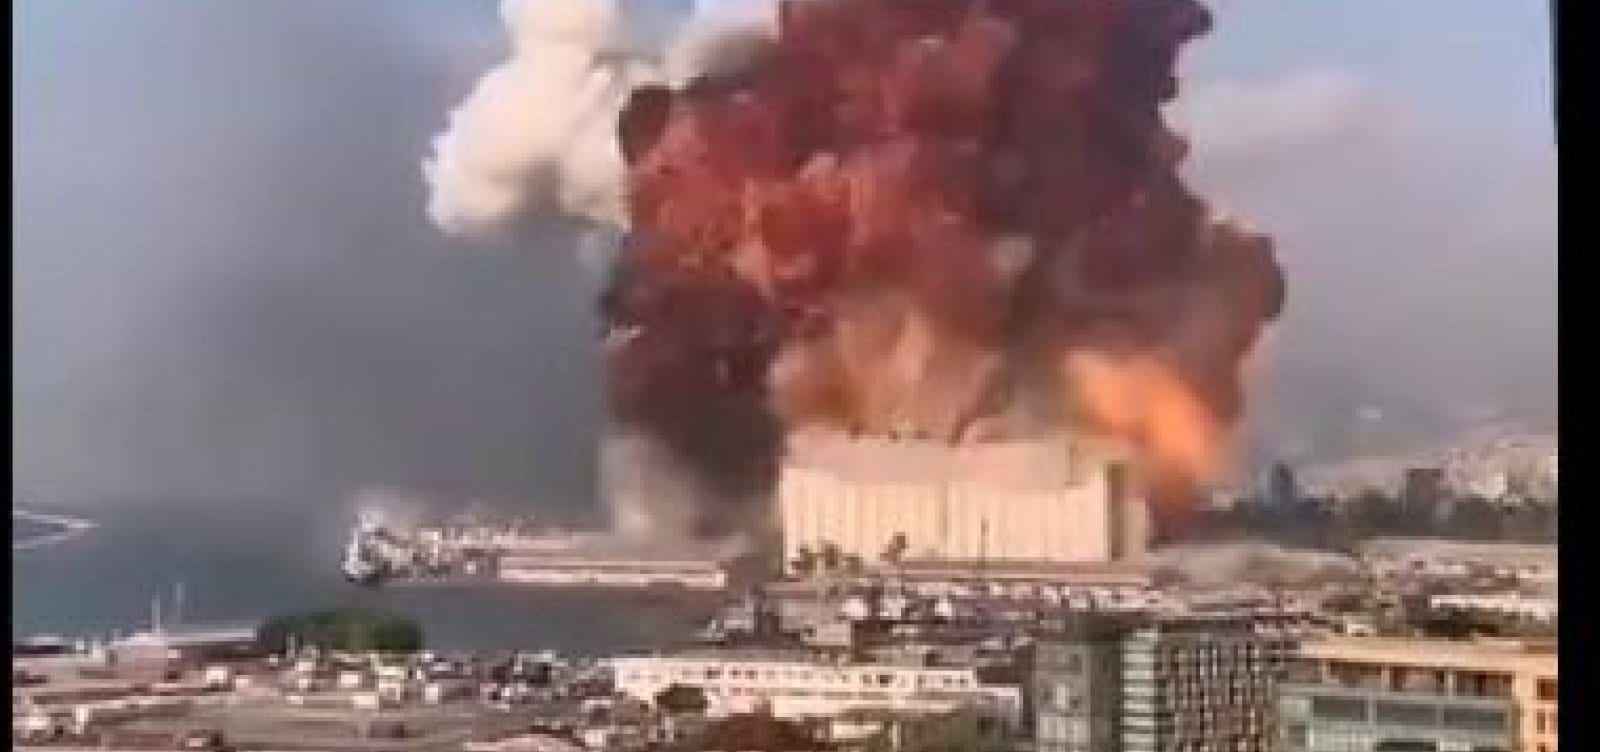 Grande explosão devasta área portuária de Beirute